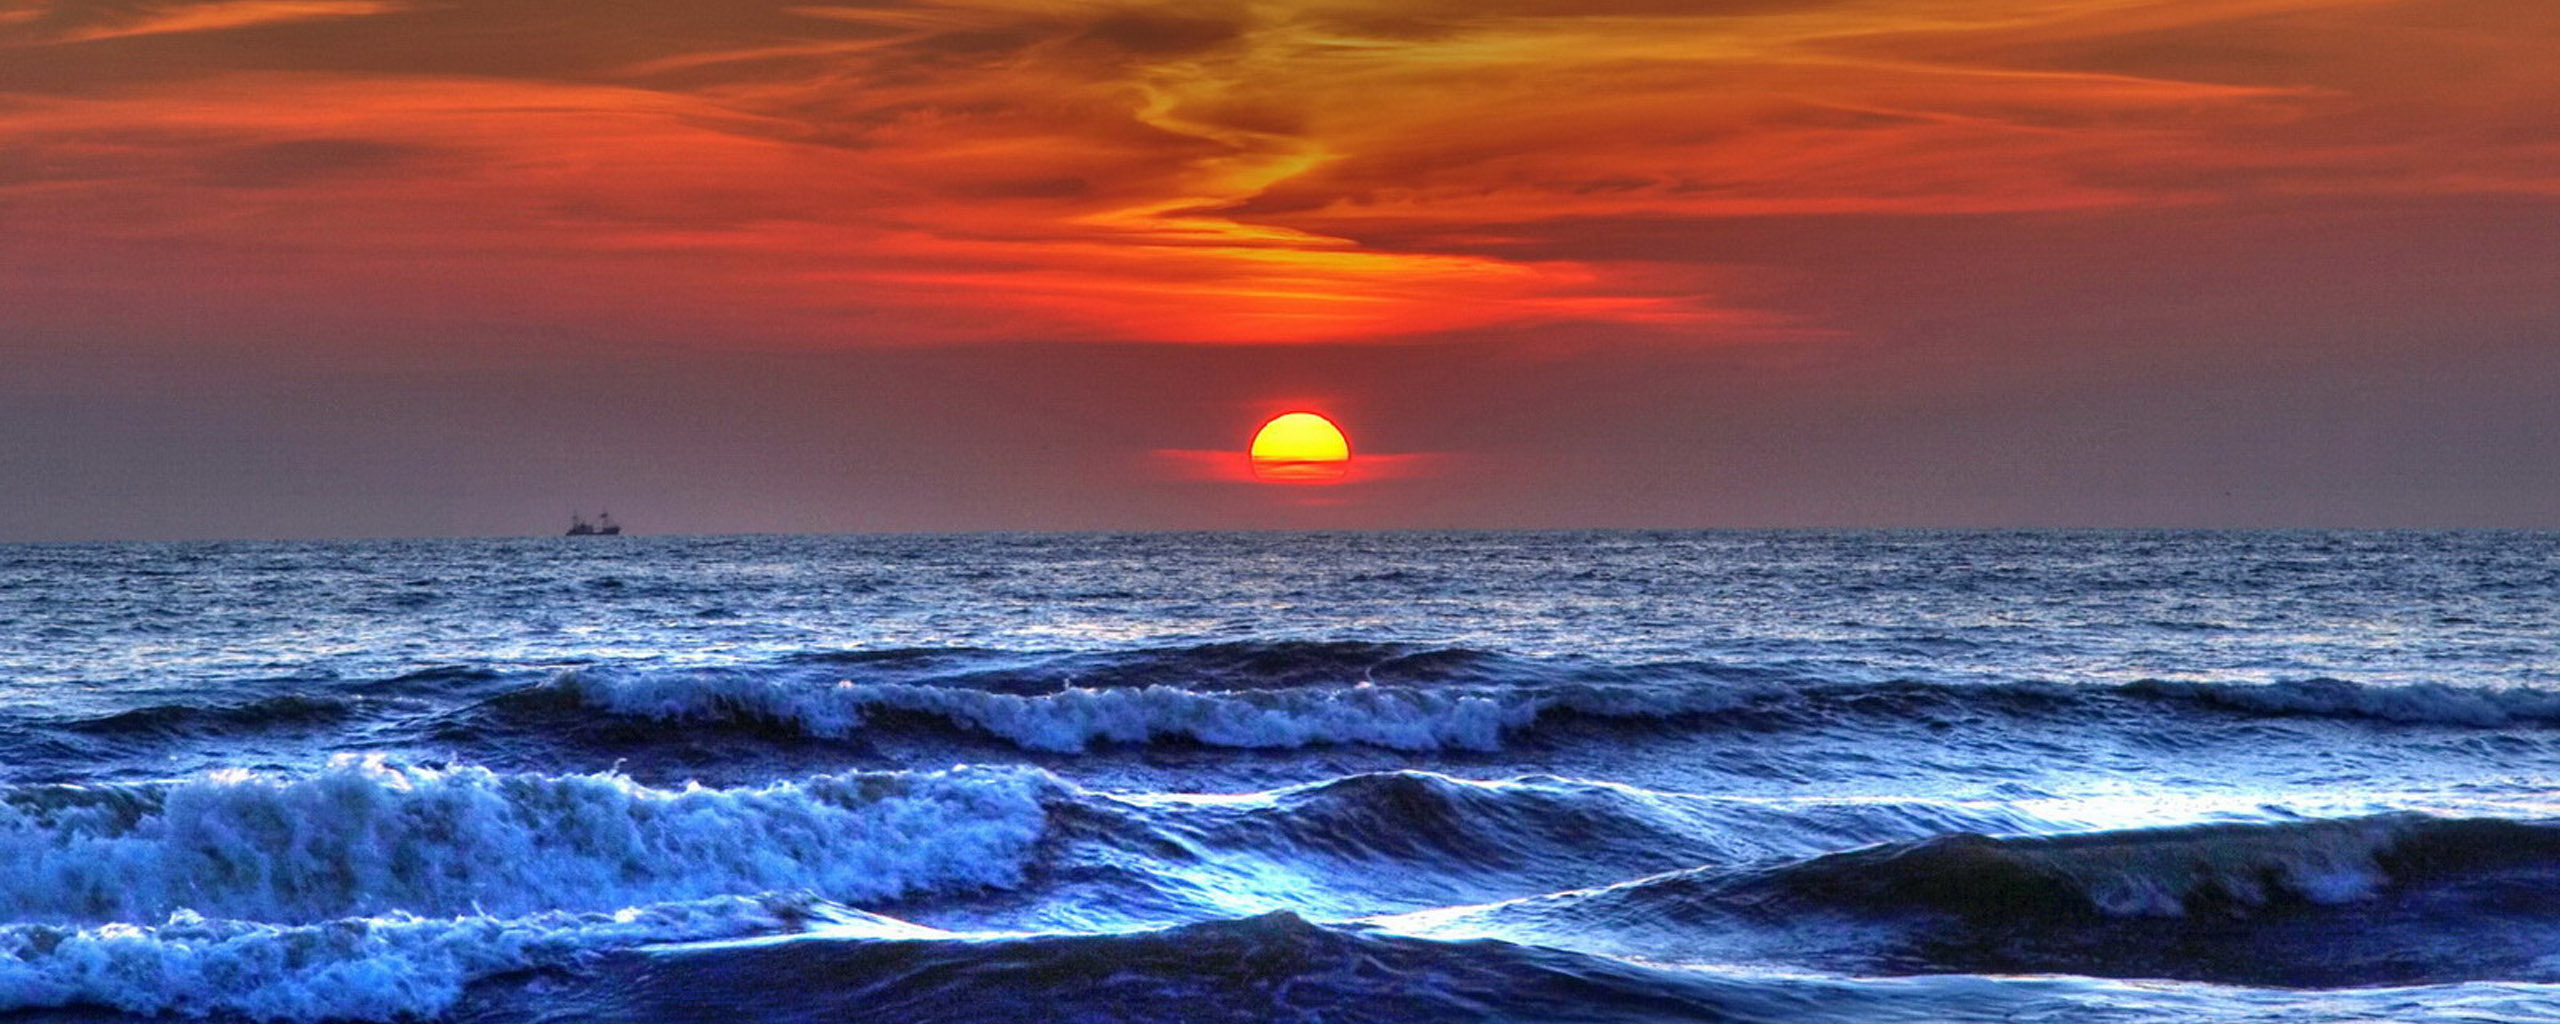 Ocean Sunset Quotes. QuotesGram